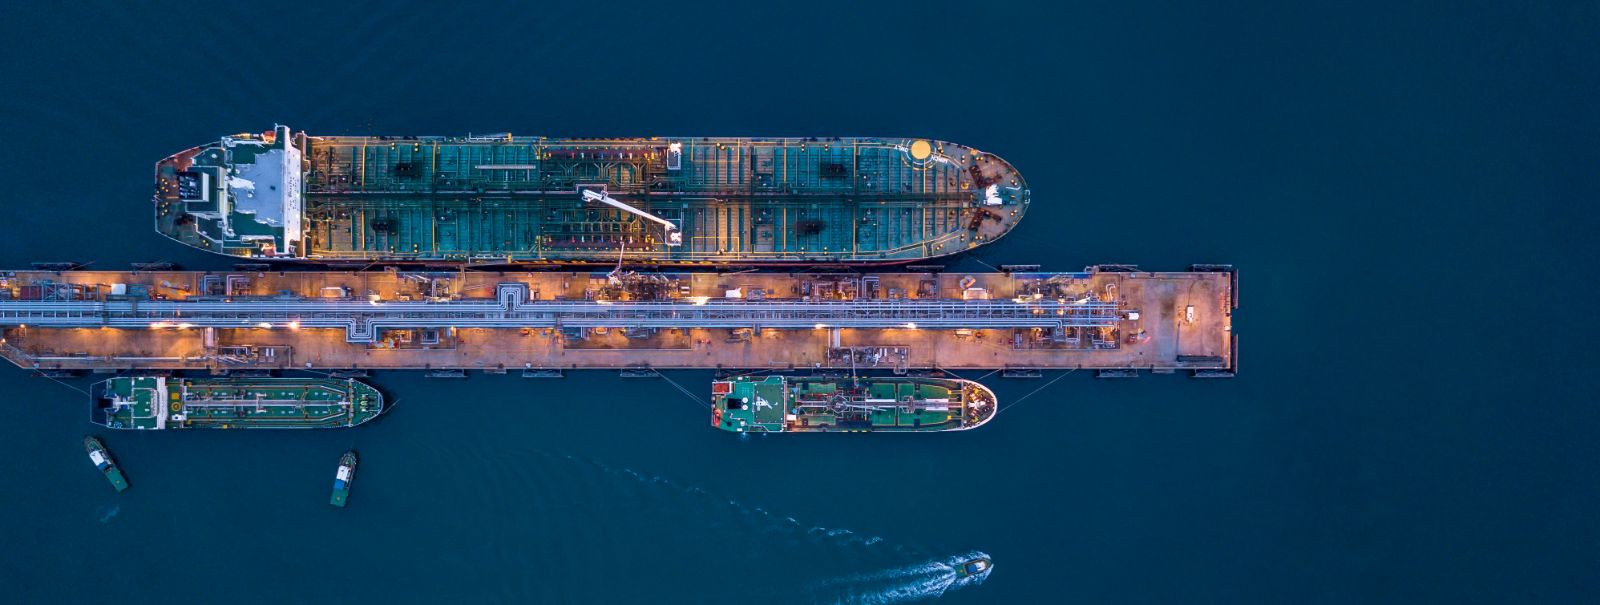 Meretranspordi tööstus on globaalse kaubanduse selgroog, vastutades igal aastal miljardite tonnide kauba liikumise eest. Kui me liigume läbi 21. sajandi, on sek